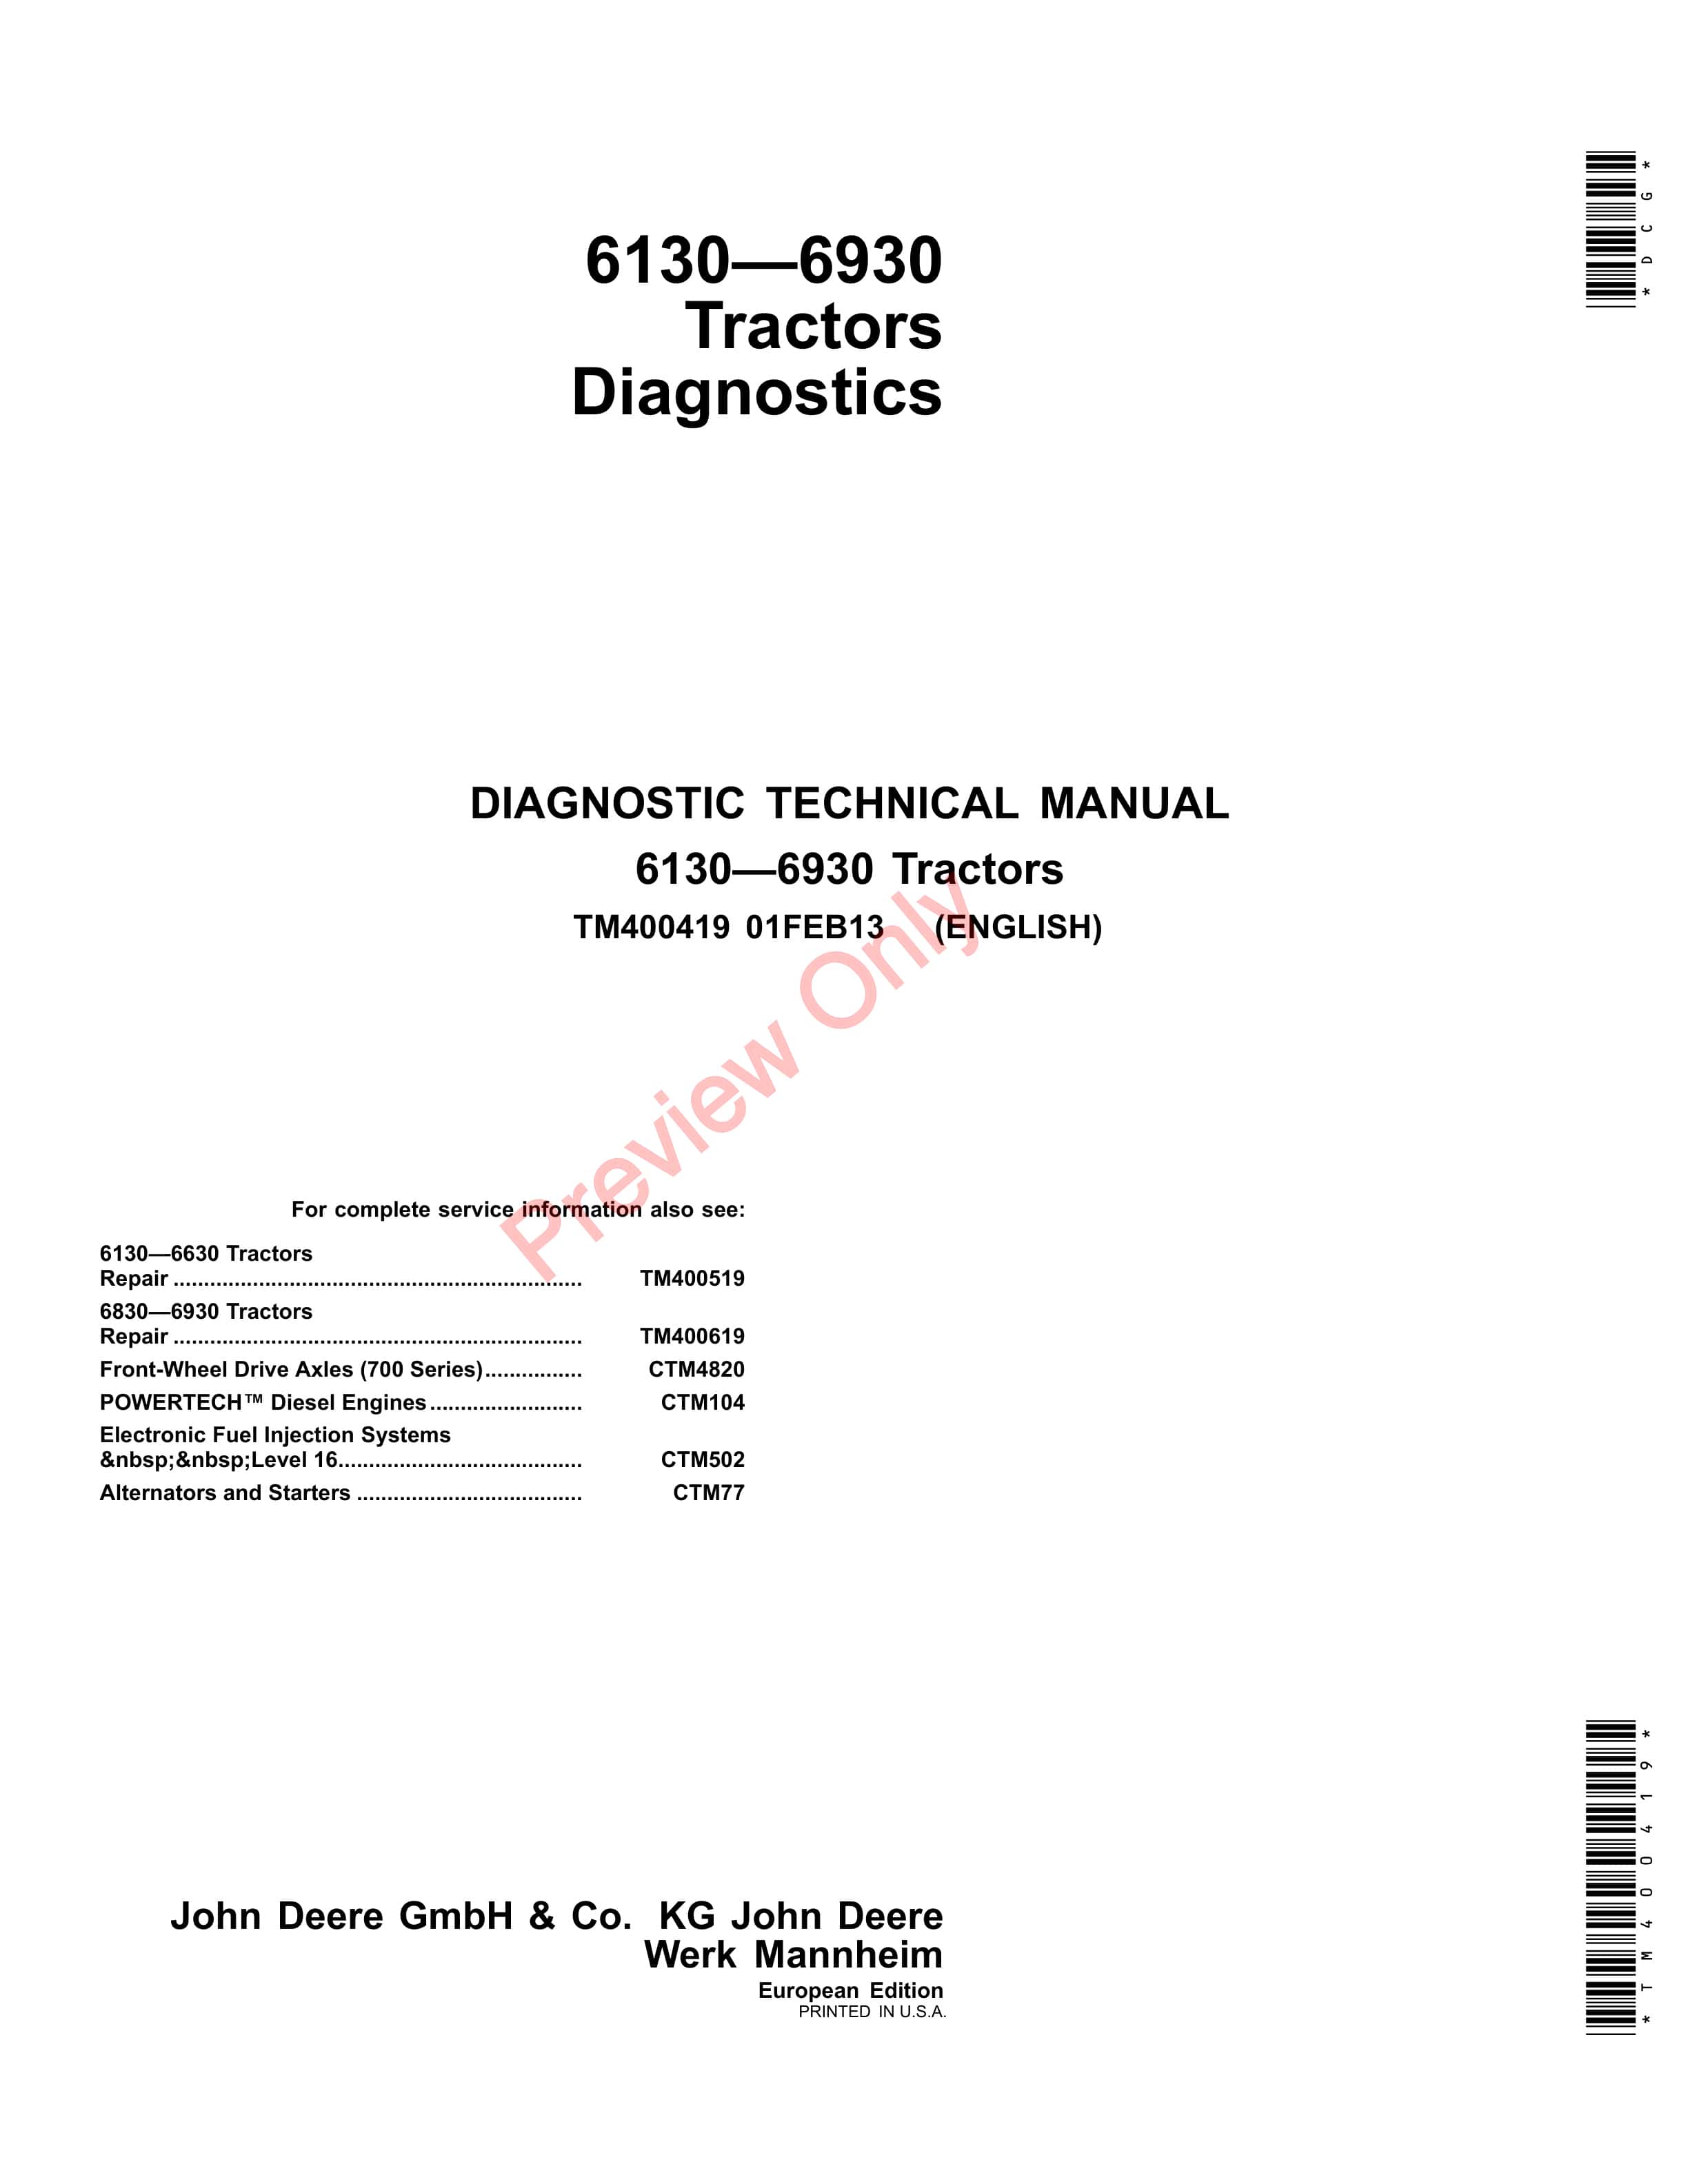 John Deere 6130 6230 6330 6430 6530 6534 6630 6830 and 6930 Tractors Diagnostic Technical Manual TM400419 01FEB13 1